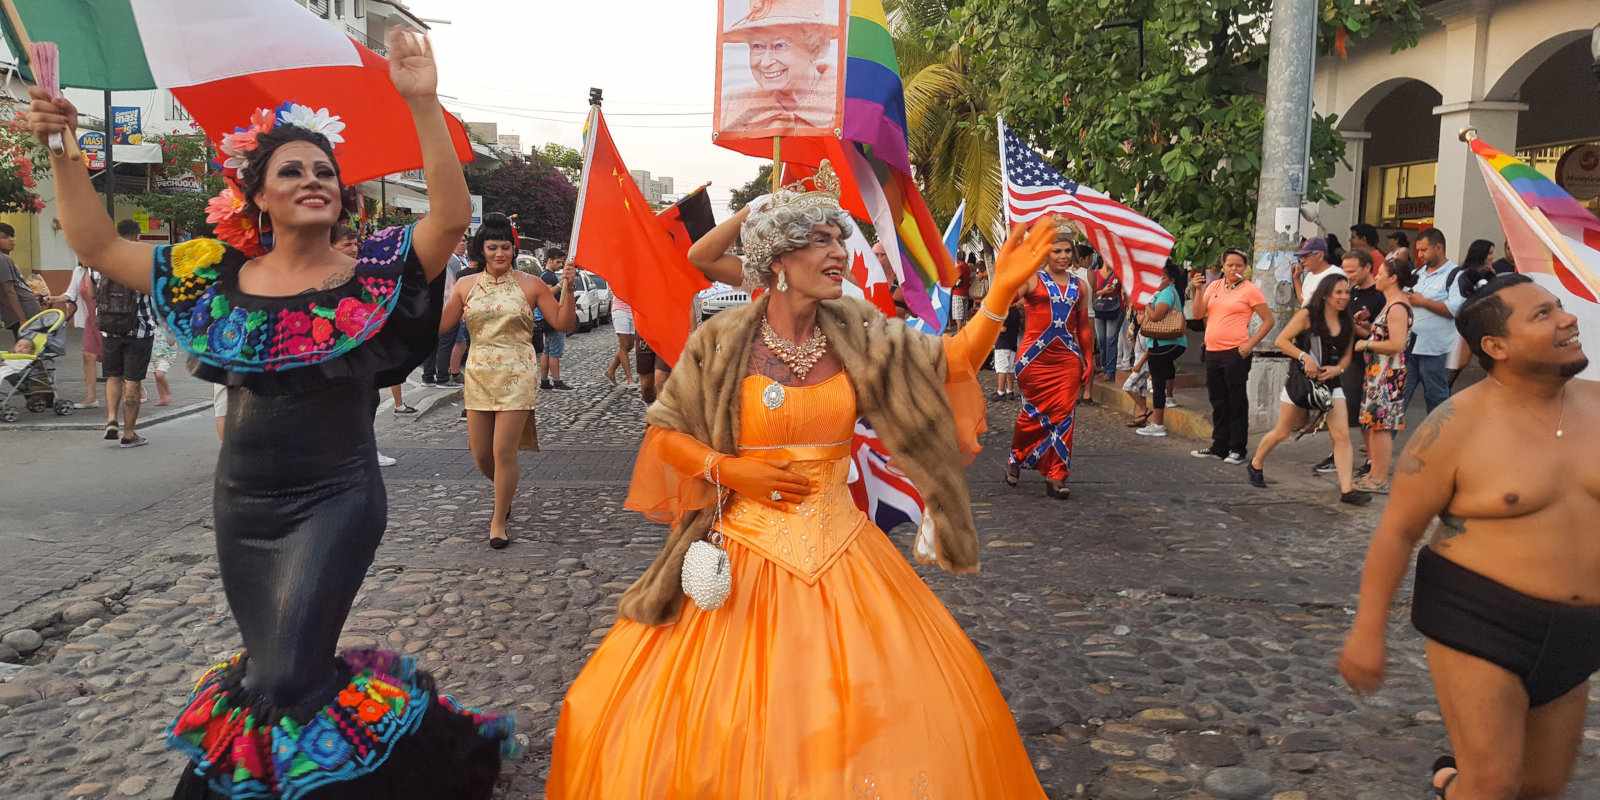 Flamboyant participants in the Puerto Vallarta gay pride parade.